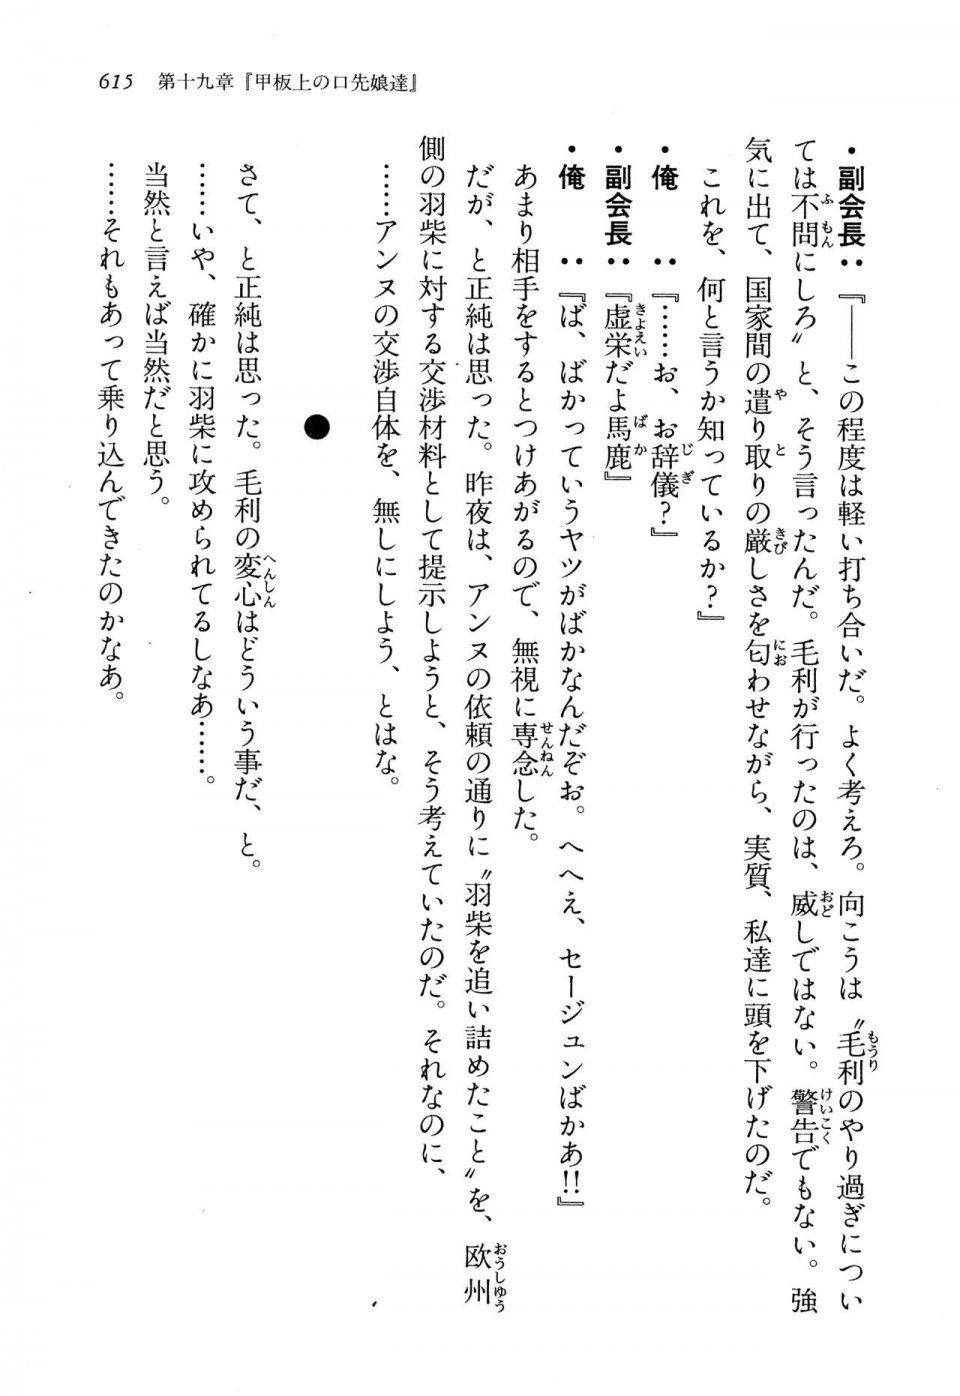 Kyoukai Senjou no Horizon LN Vol 13(6A) - Photo #615